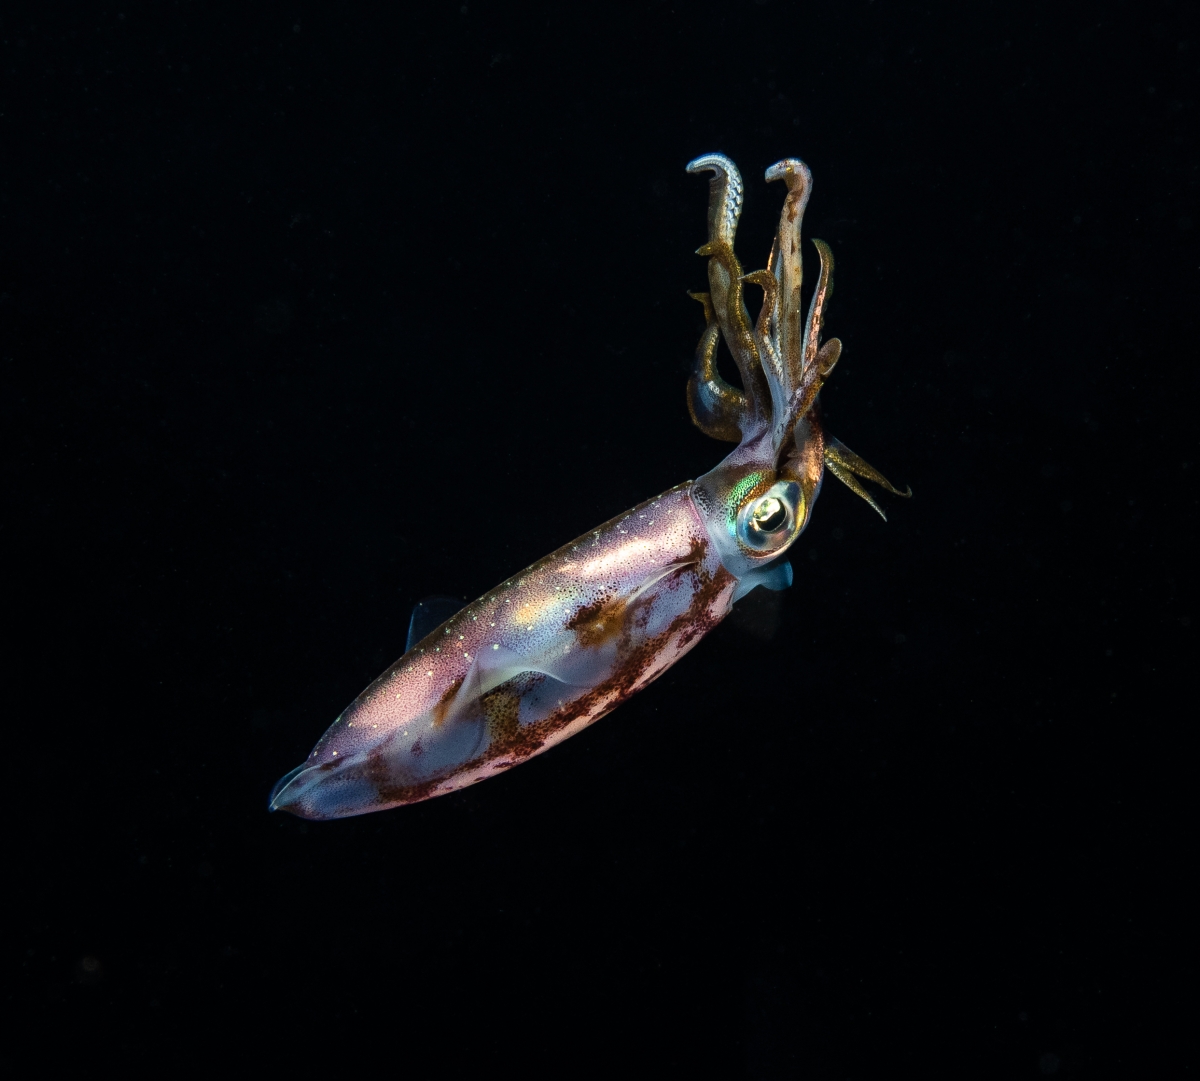 Caribbean Reef Squid at Night